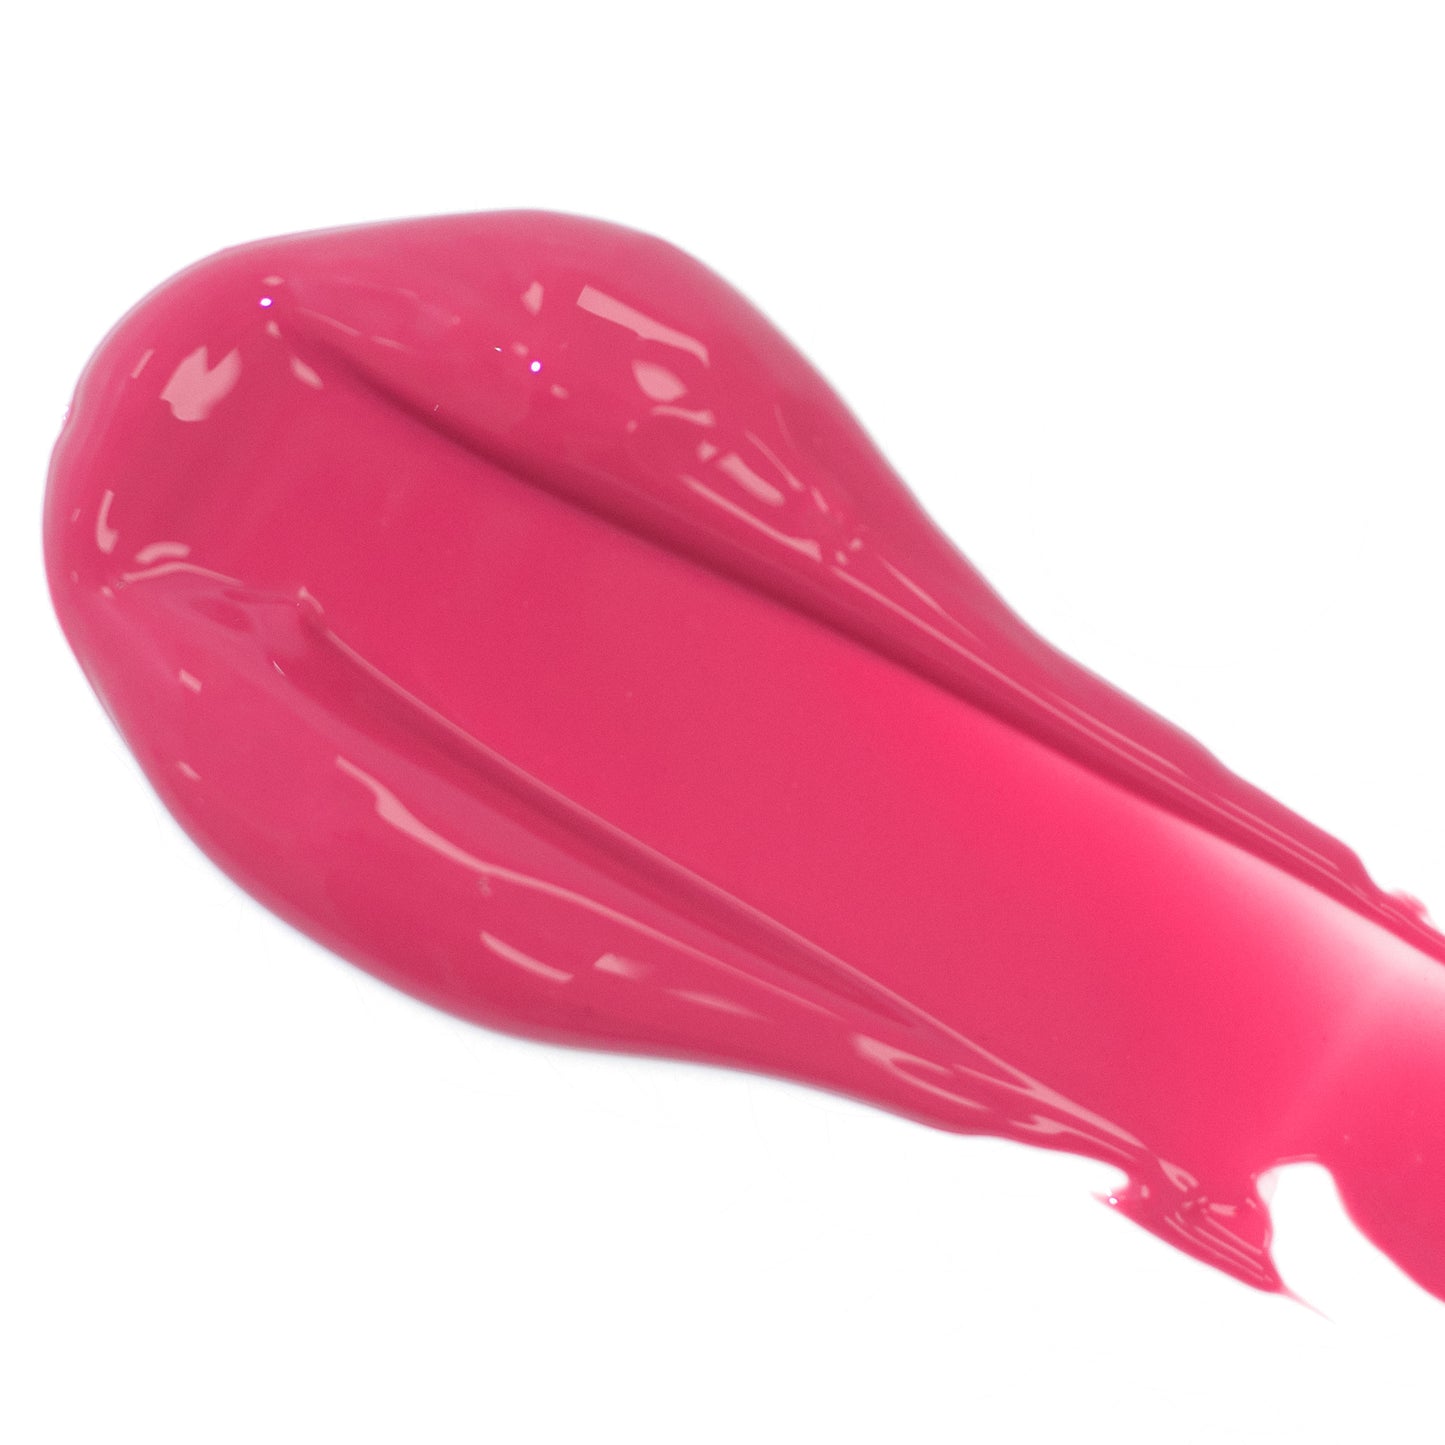 Fresh - Creamy Fresh Pink - Lip Serum By FitGlow Beauty